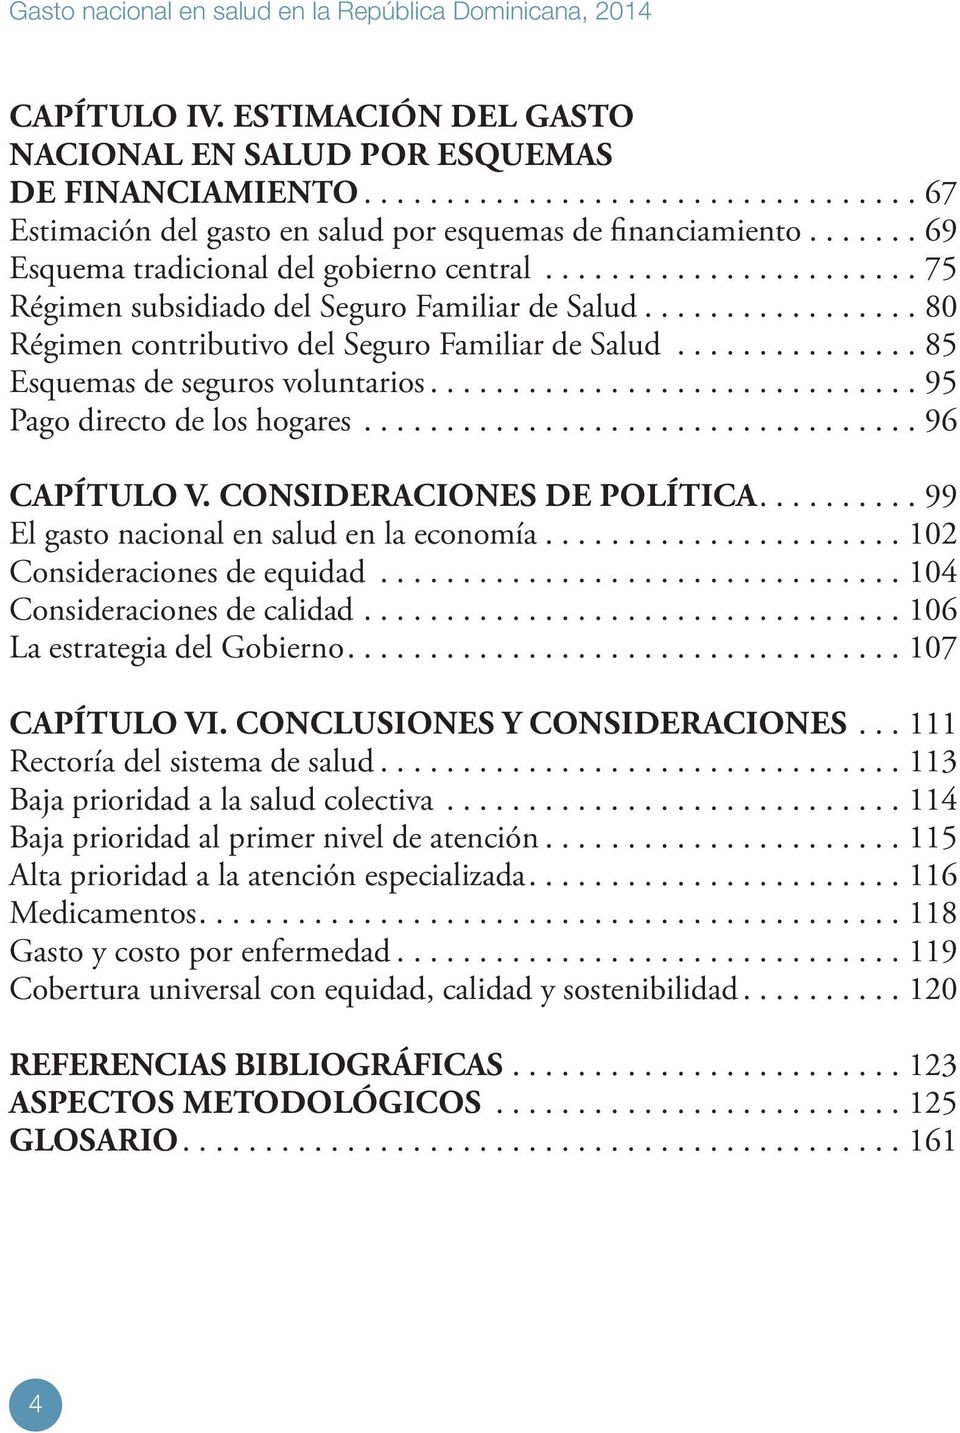 CONSIDERACIONES DE POLÍTICA....99 El gasto nacional en salud en la economía...102 Consideraciones de equidad...104 Consideraciones de calidad...106 La estrategia del Gobierno....107 CAPÍTULO VI.